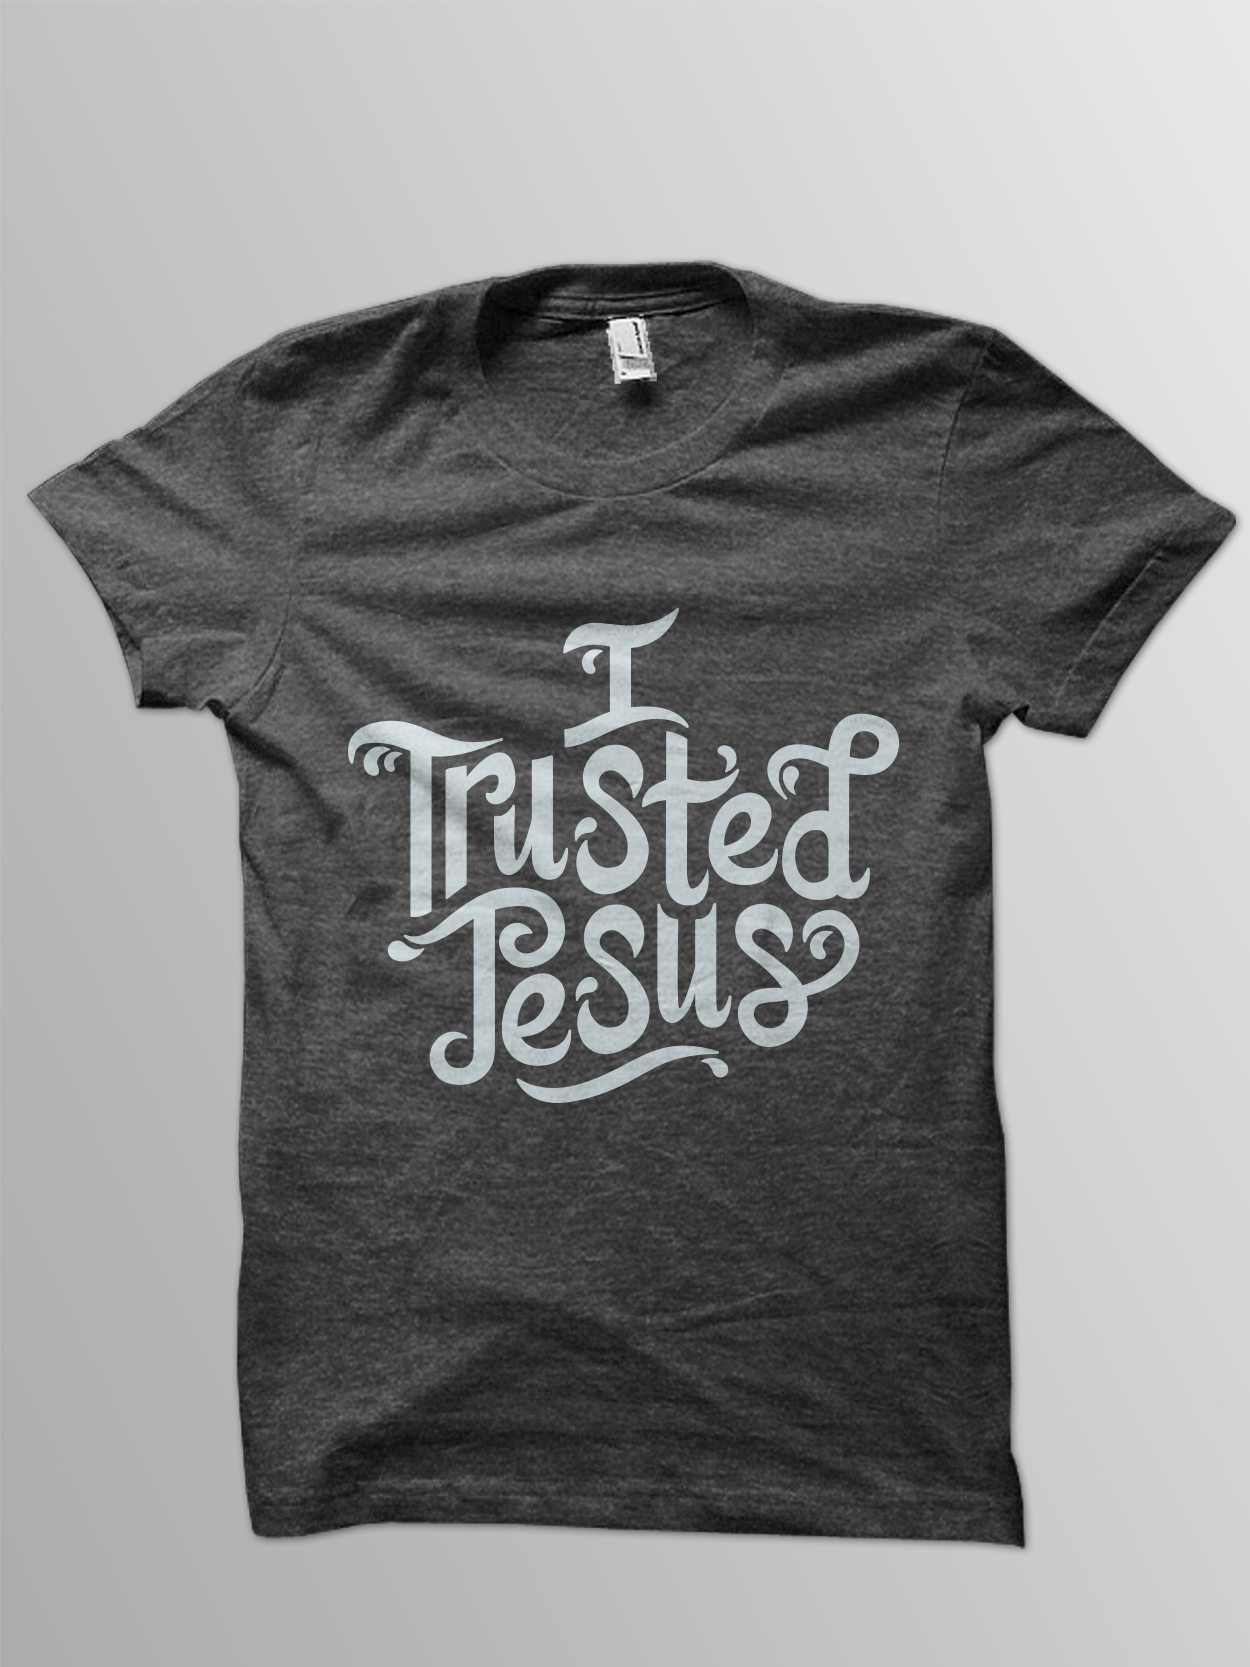 Baptism tshirt.jpg